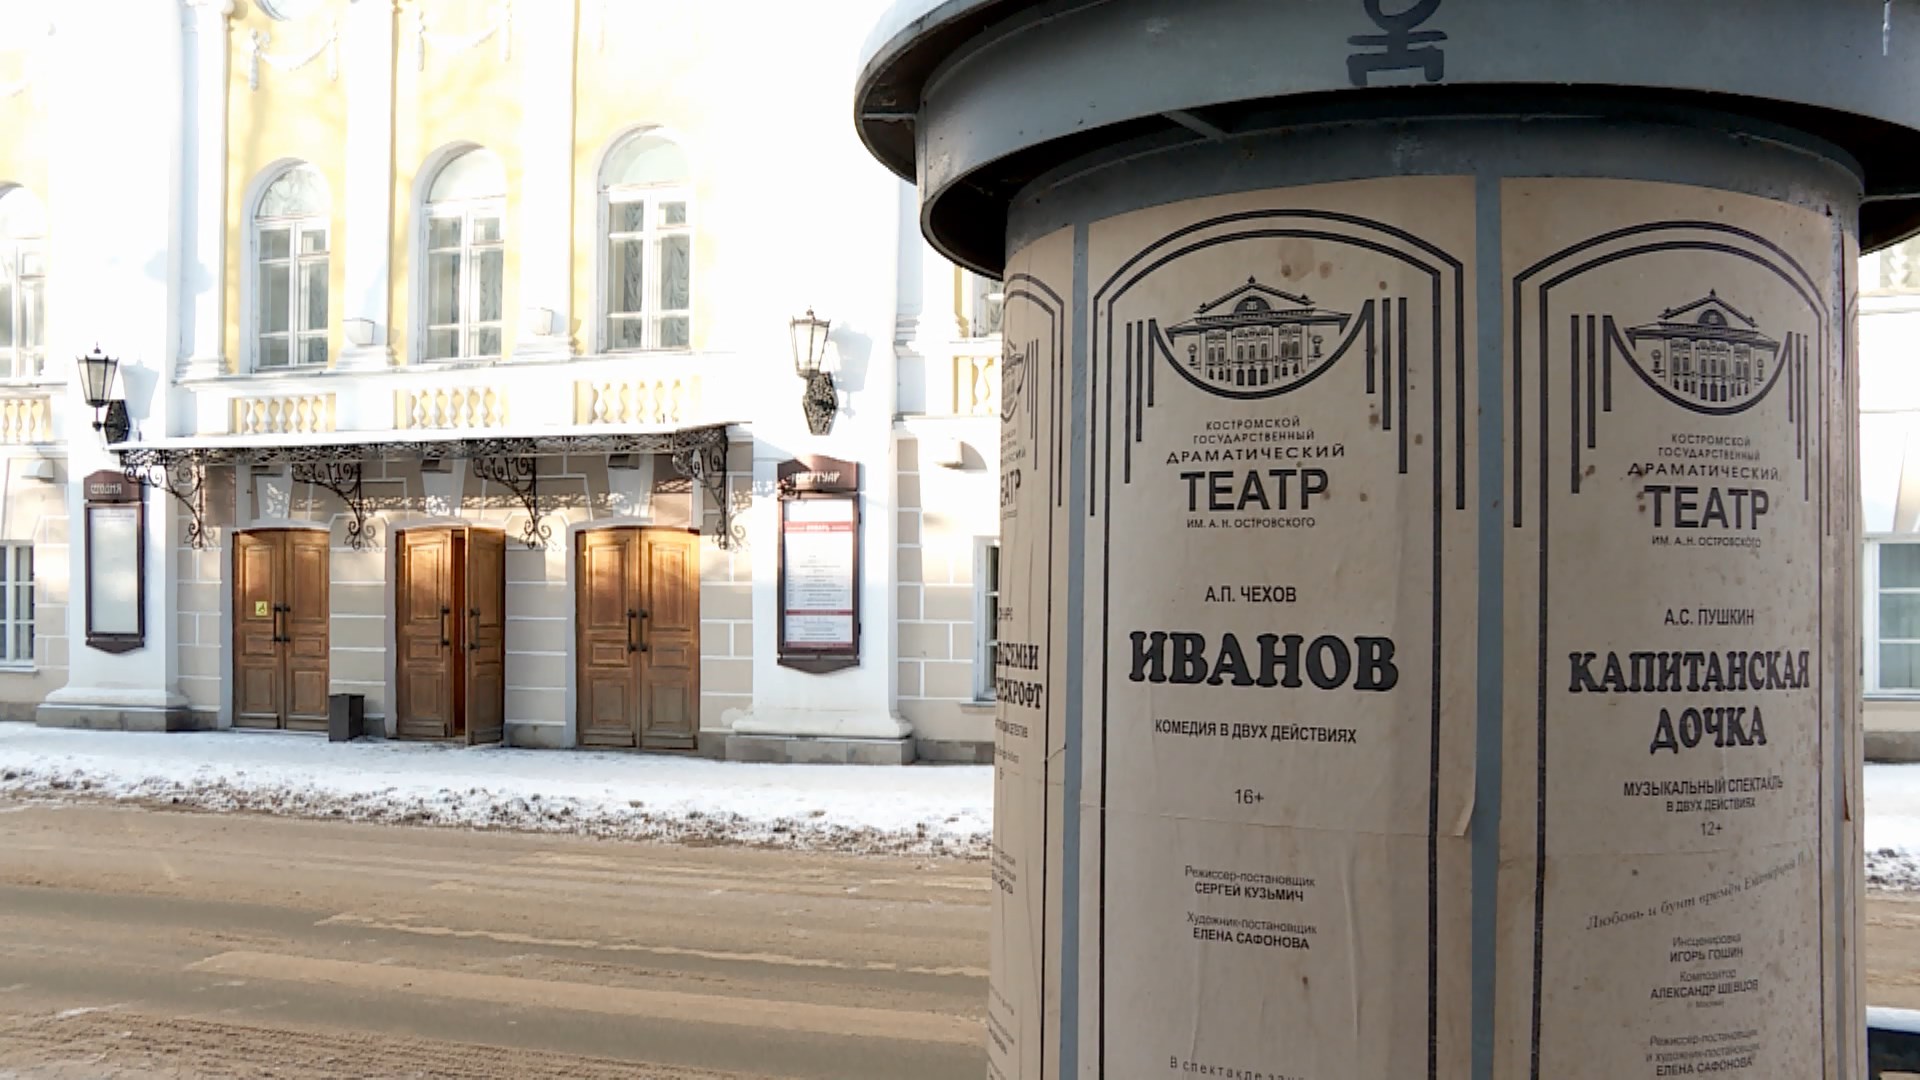 Костромской драмтеатр имени Островского отмечает 215 лет